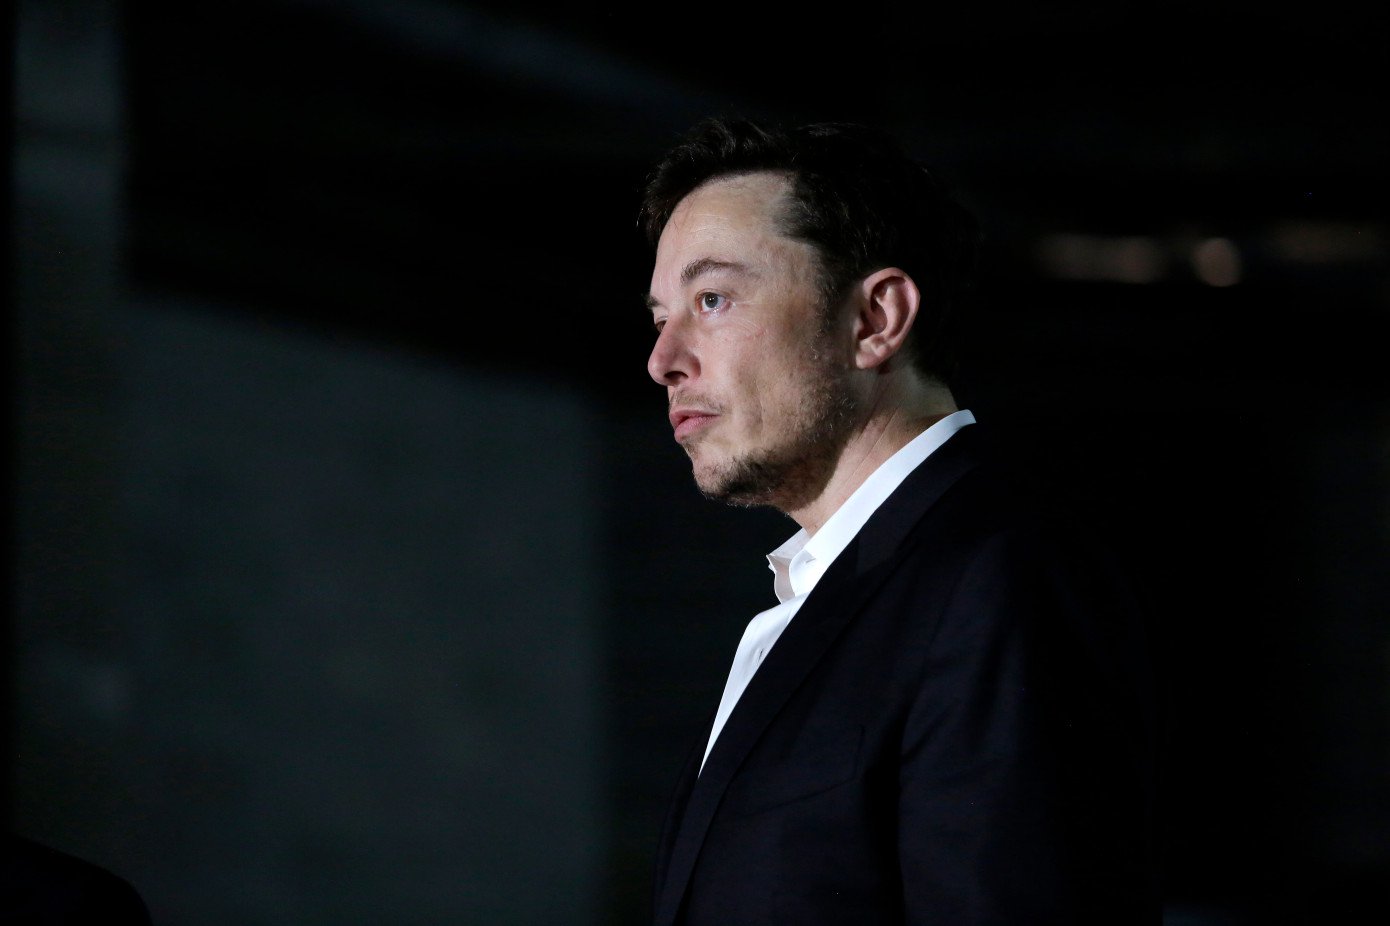 Elon Musk avfärdas på begäran av SEC. Tesla böta $ 20 miljoner